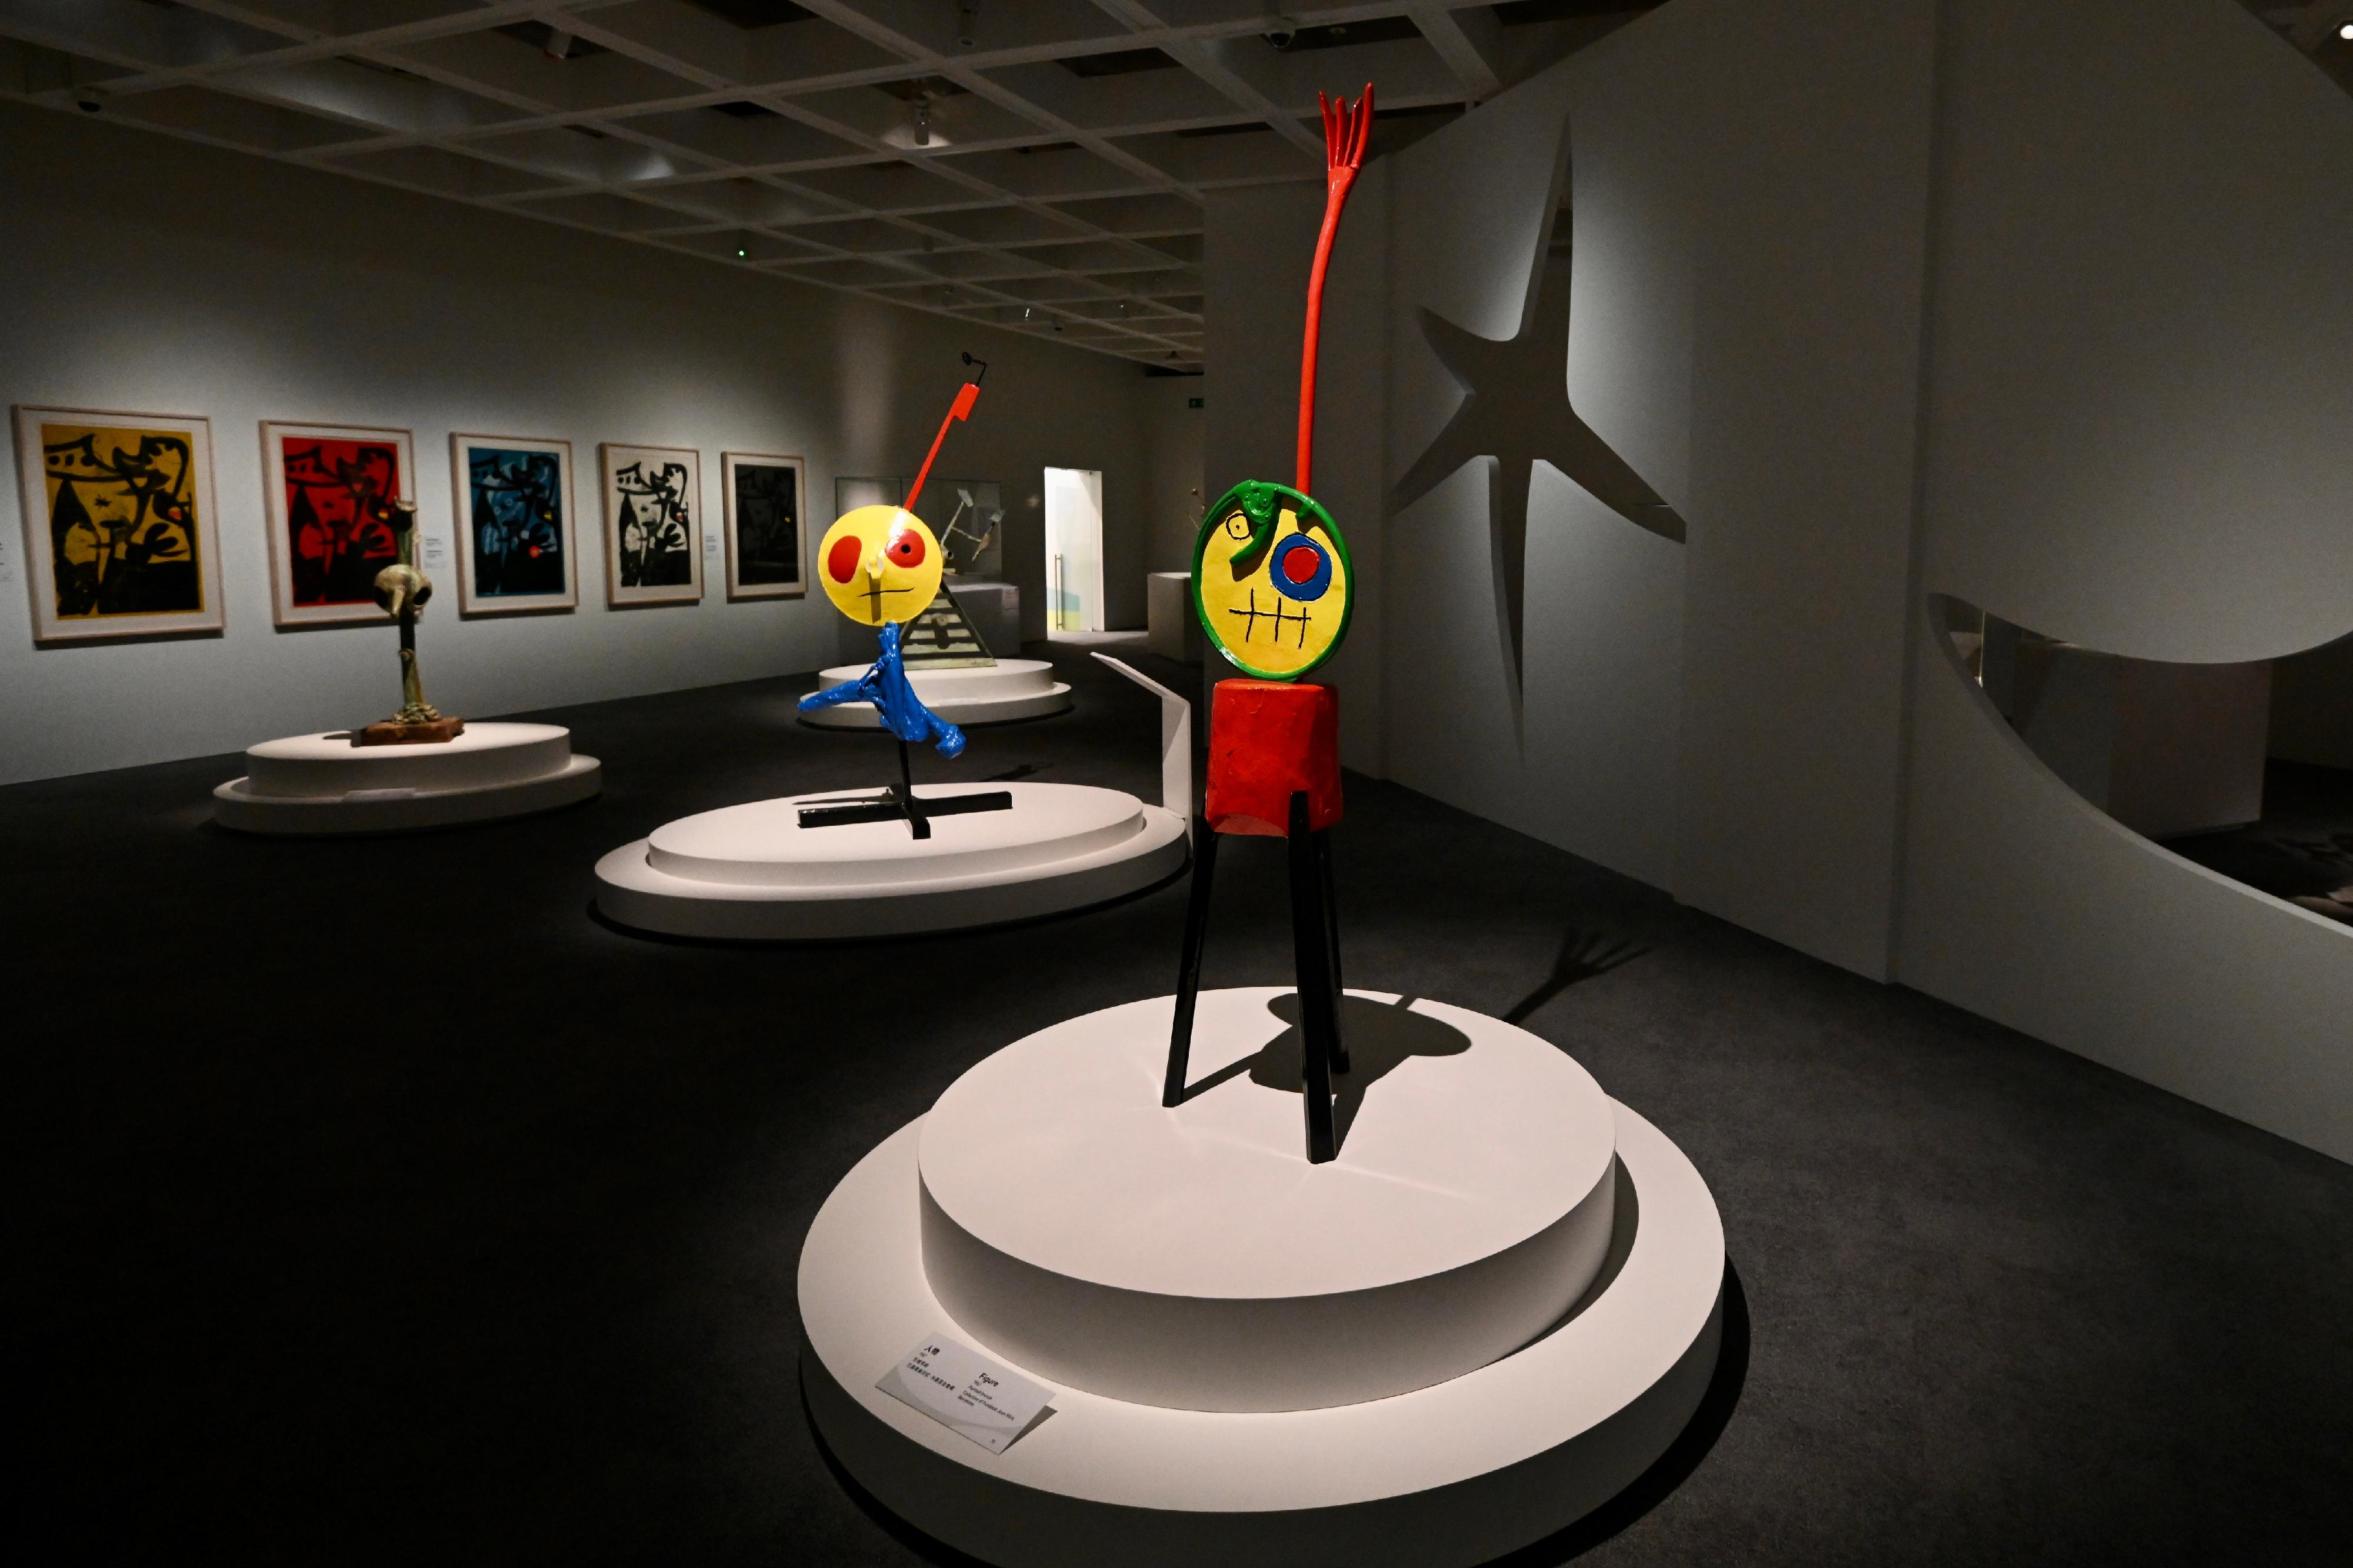 「香港赛马会呈献系列：米罗的诗想日常」展览，明日（三月三日）起在香港艺术馆举行。图示米罗以日常物件拼凑的雕塑作品。